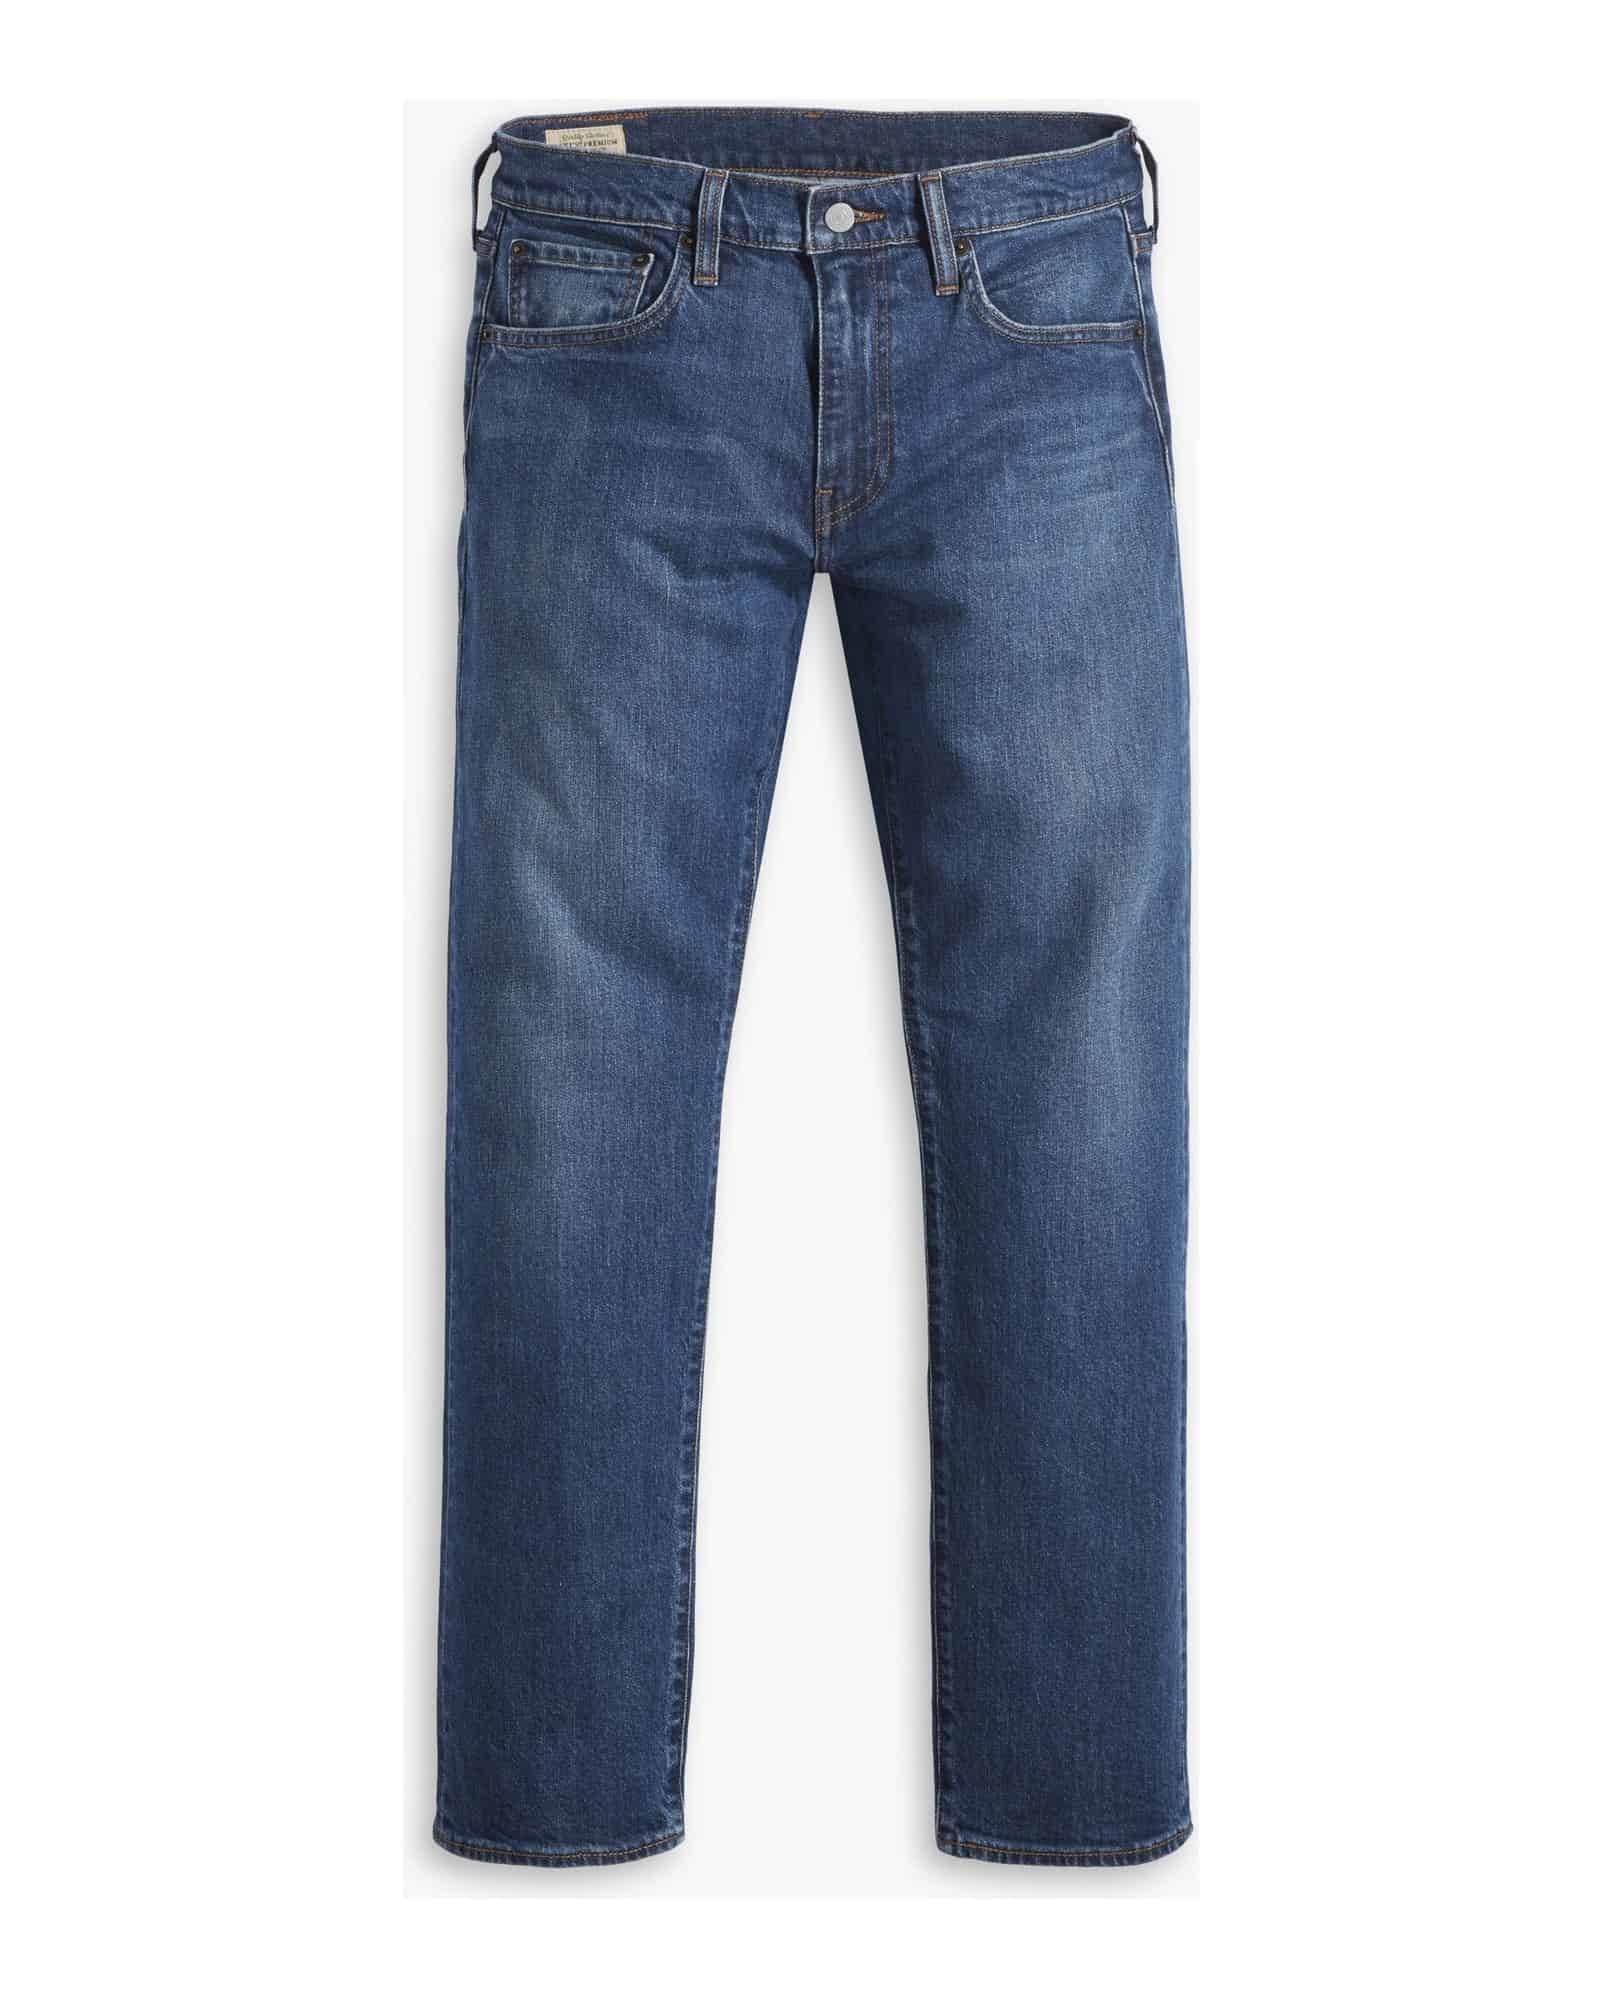 Мужские джинсы LEVI'S, Цвет: Синий, Размер: 30/32